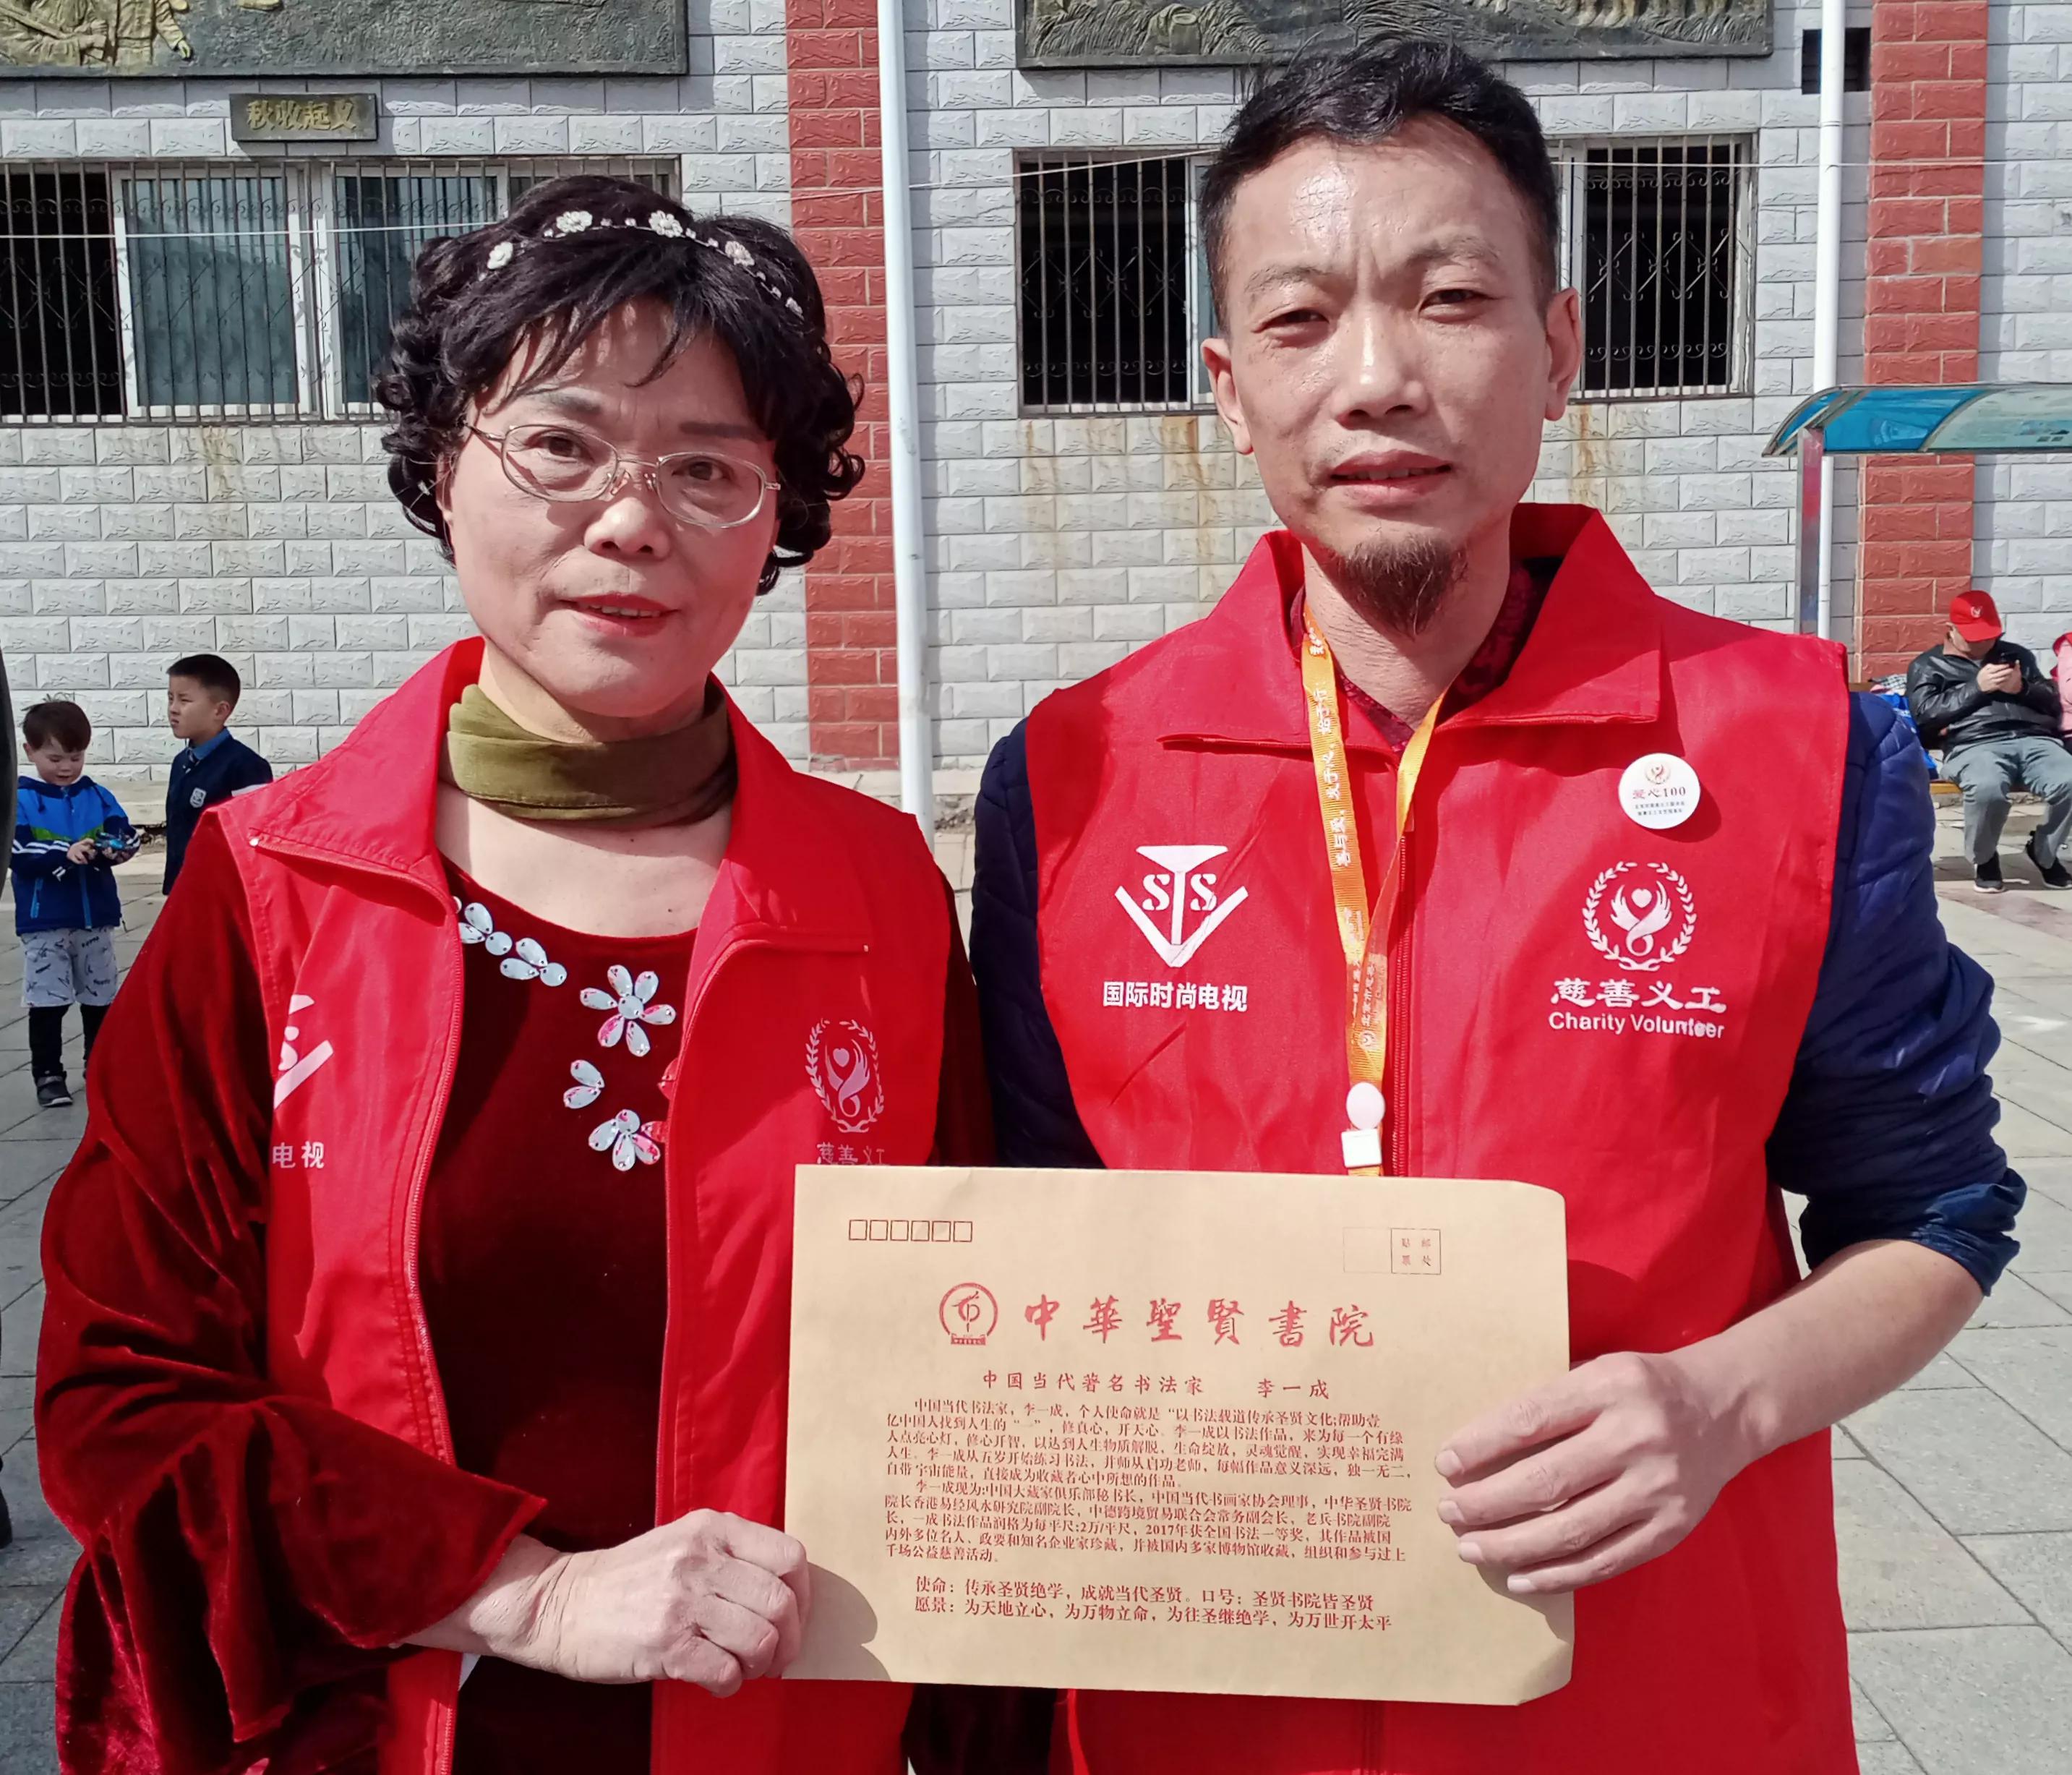 弘扬志愿服务精神北京市文明服务促进条例宣传活动在房山区进行